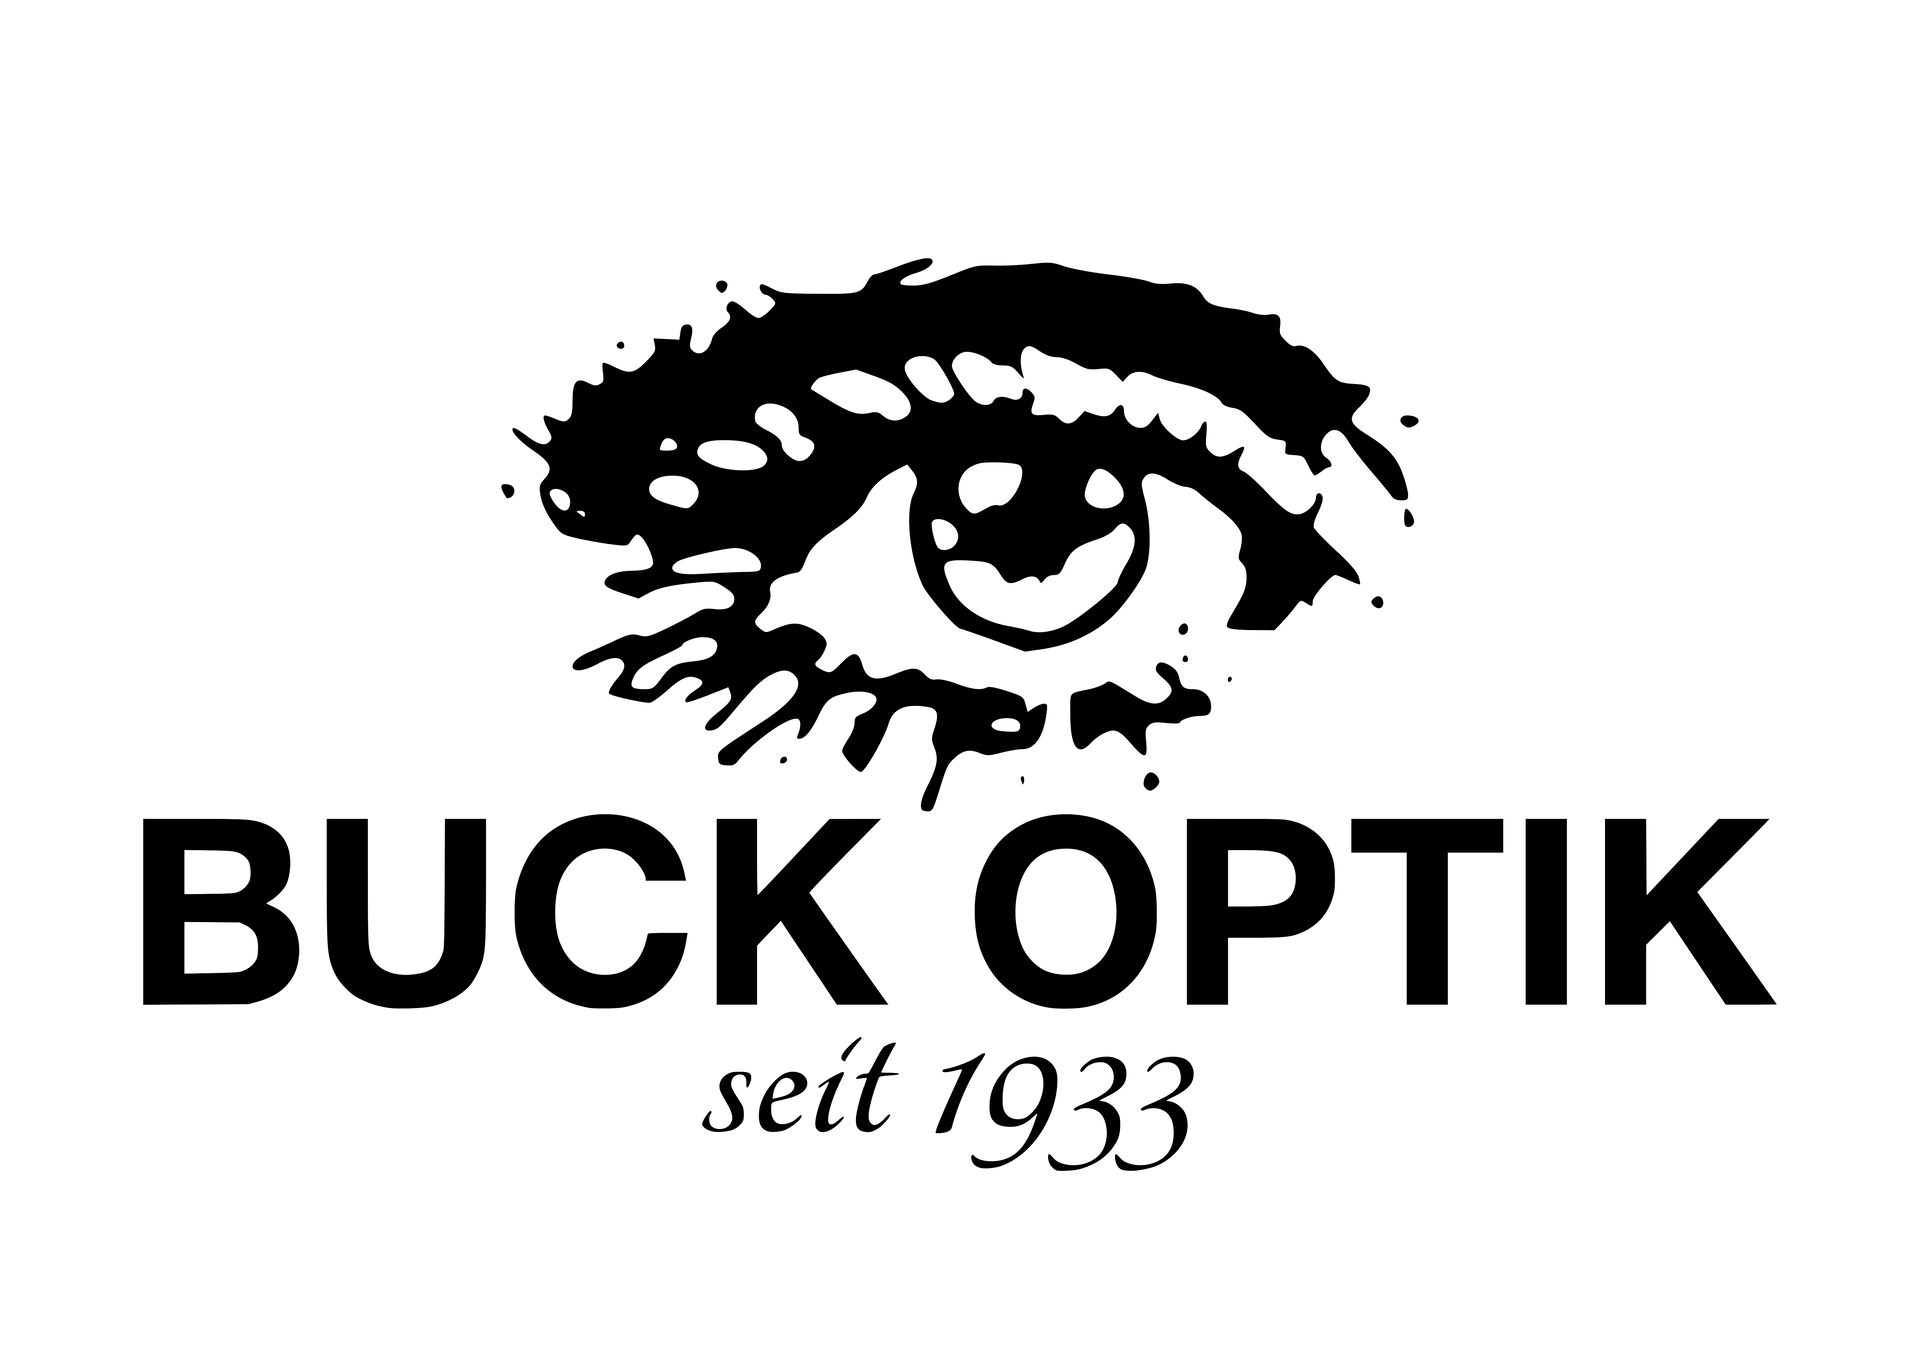 Logo Buck Optik AG